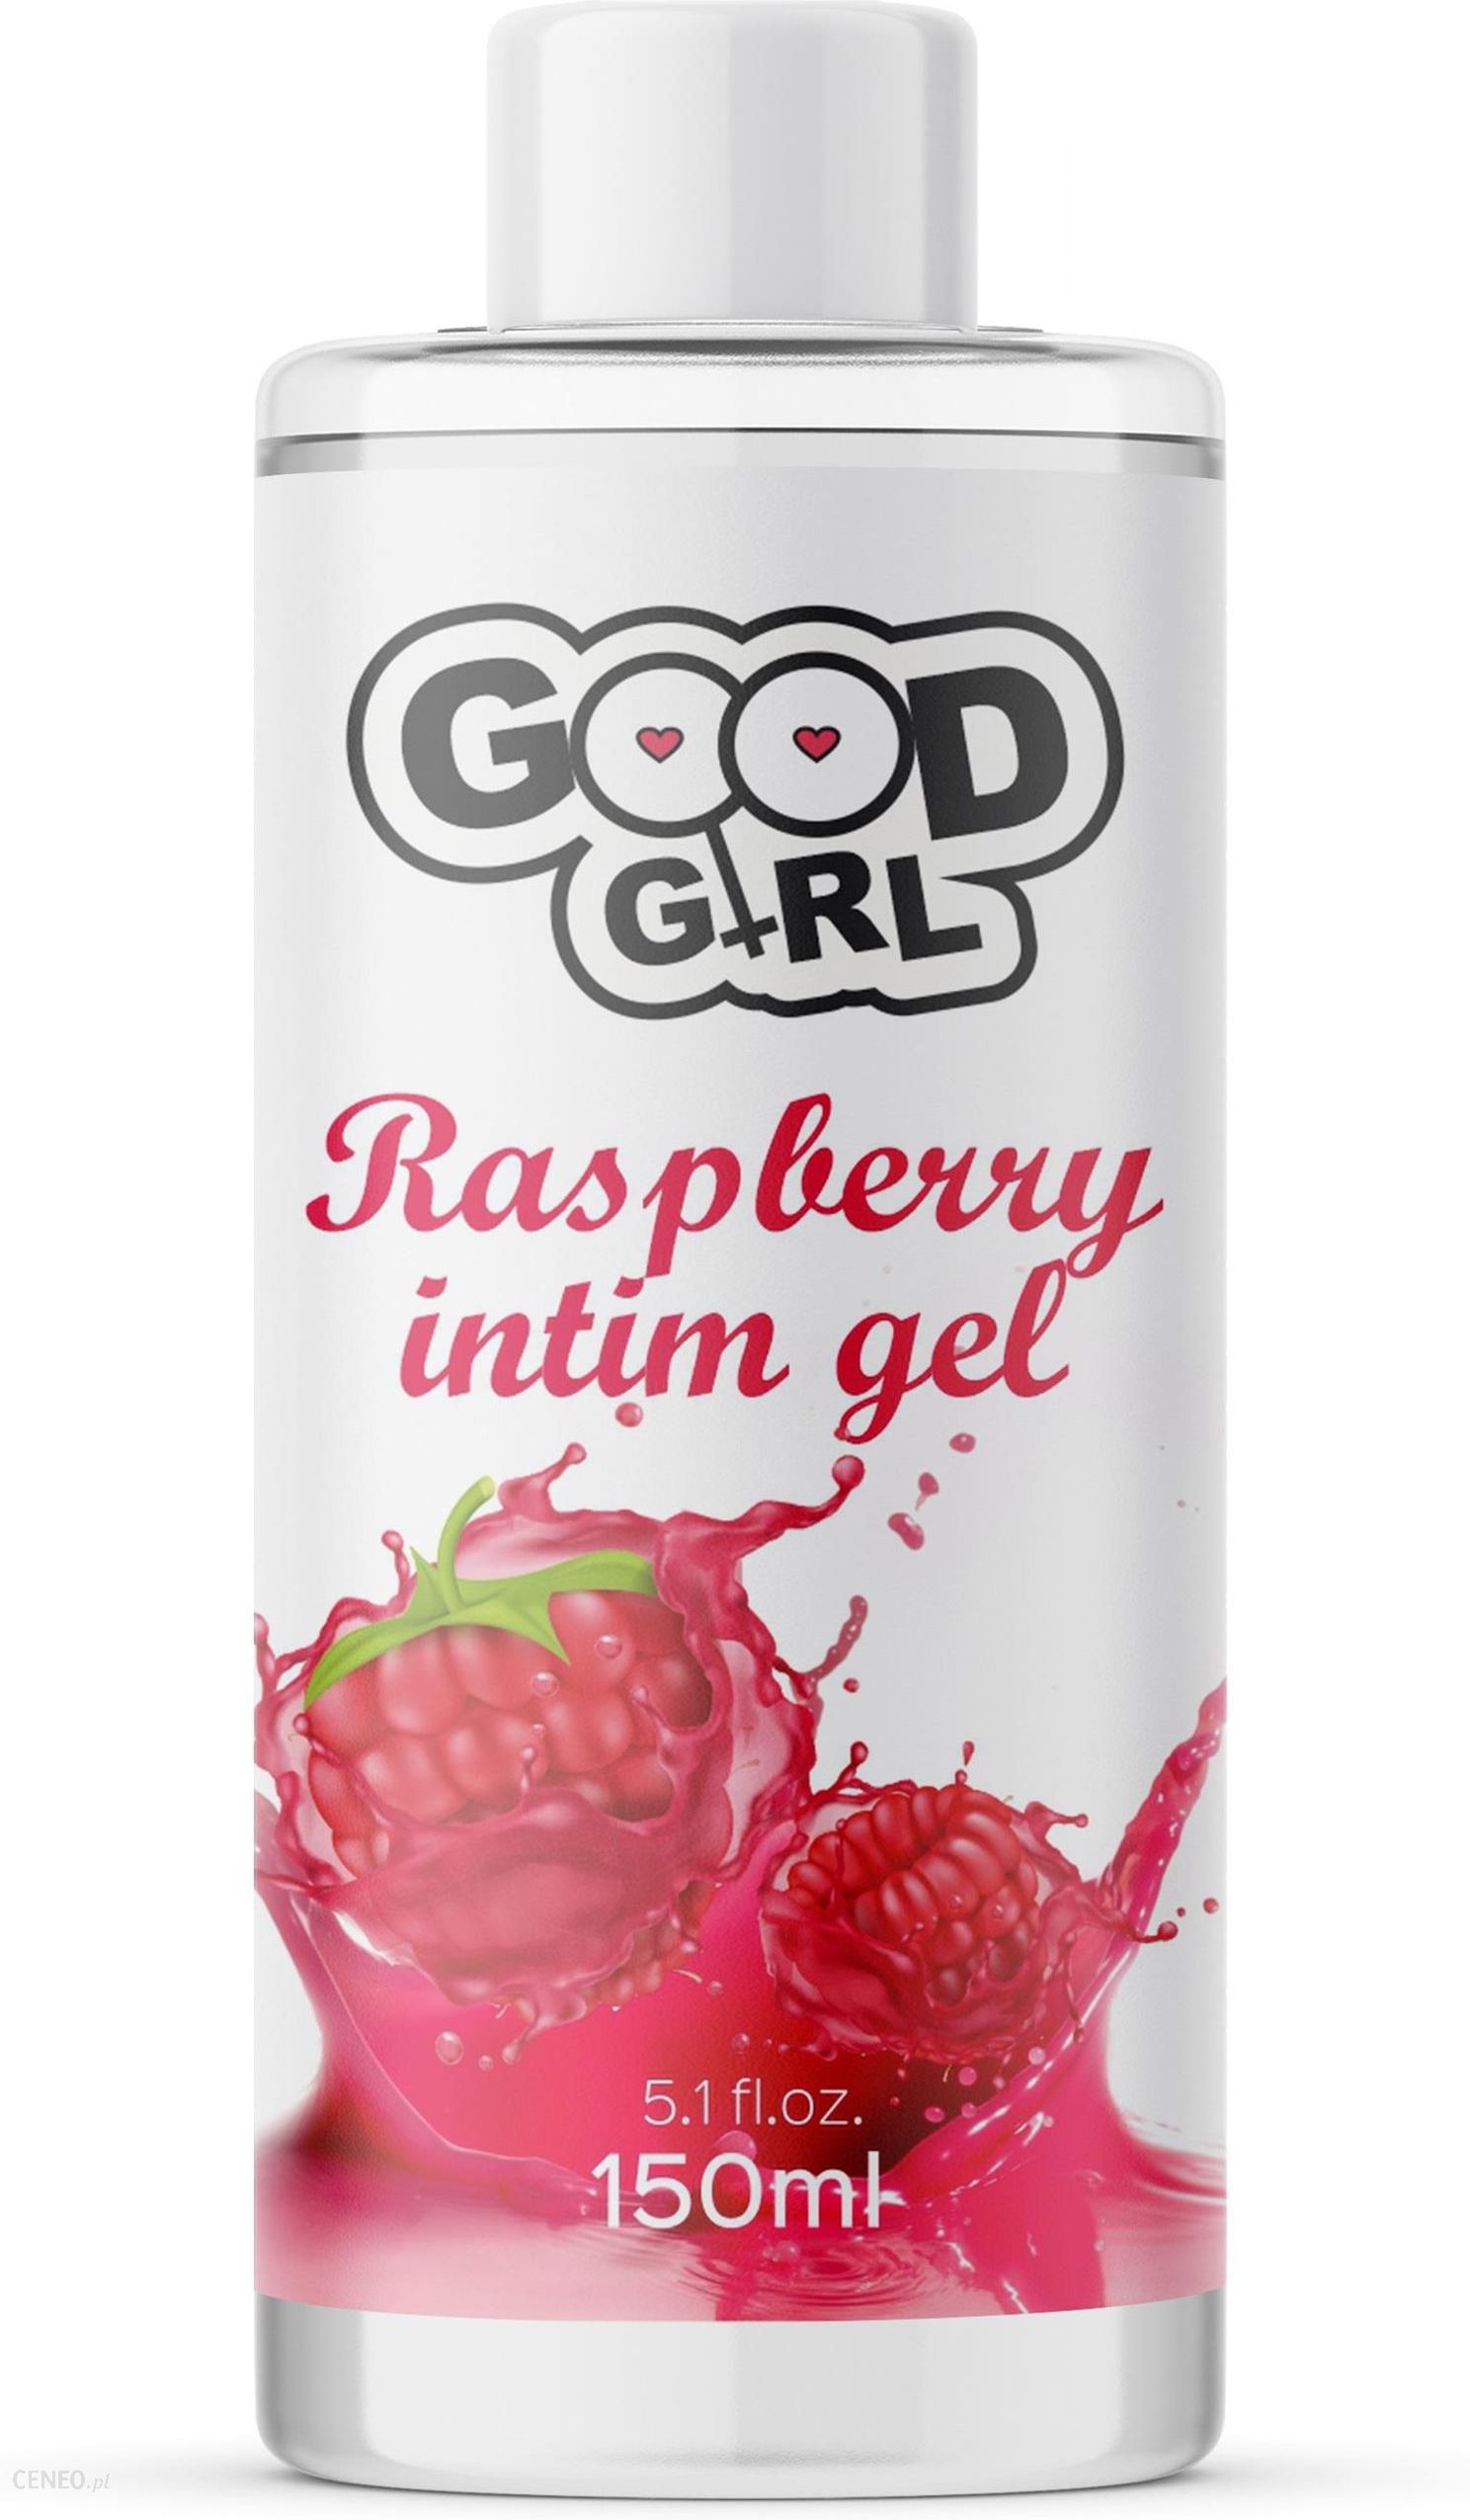 Good Girl Raspberry Intim Gel Lubrykant Na Bazie Wody Malinowy 150ml Ceneopl 